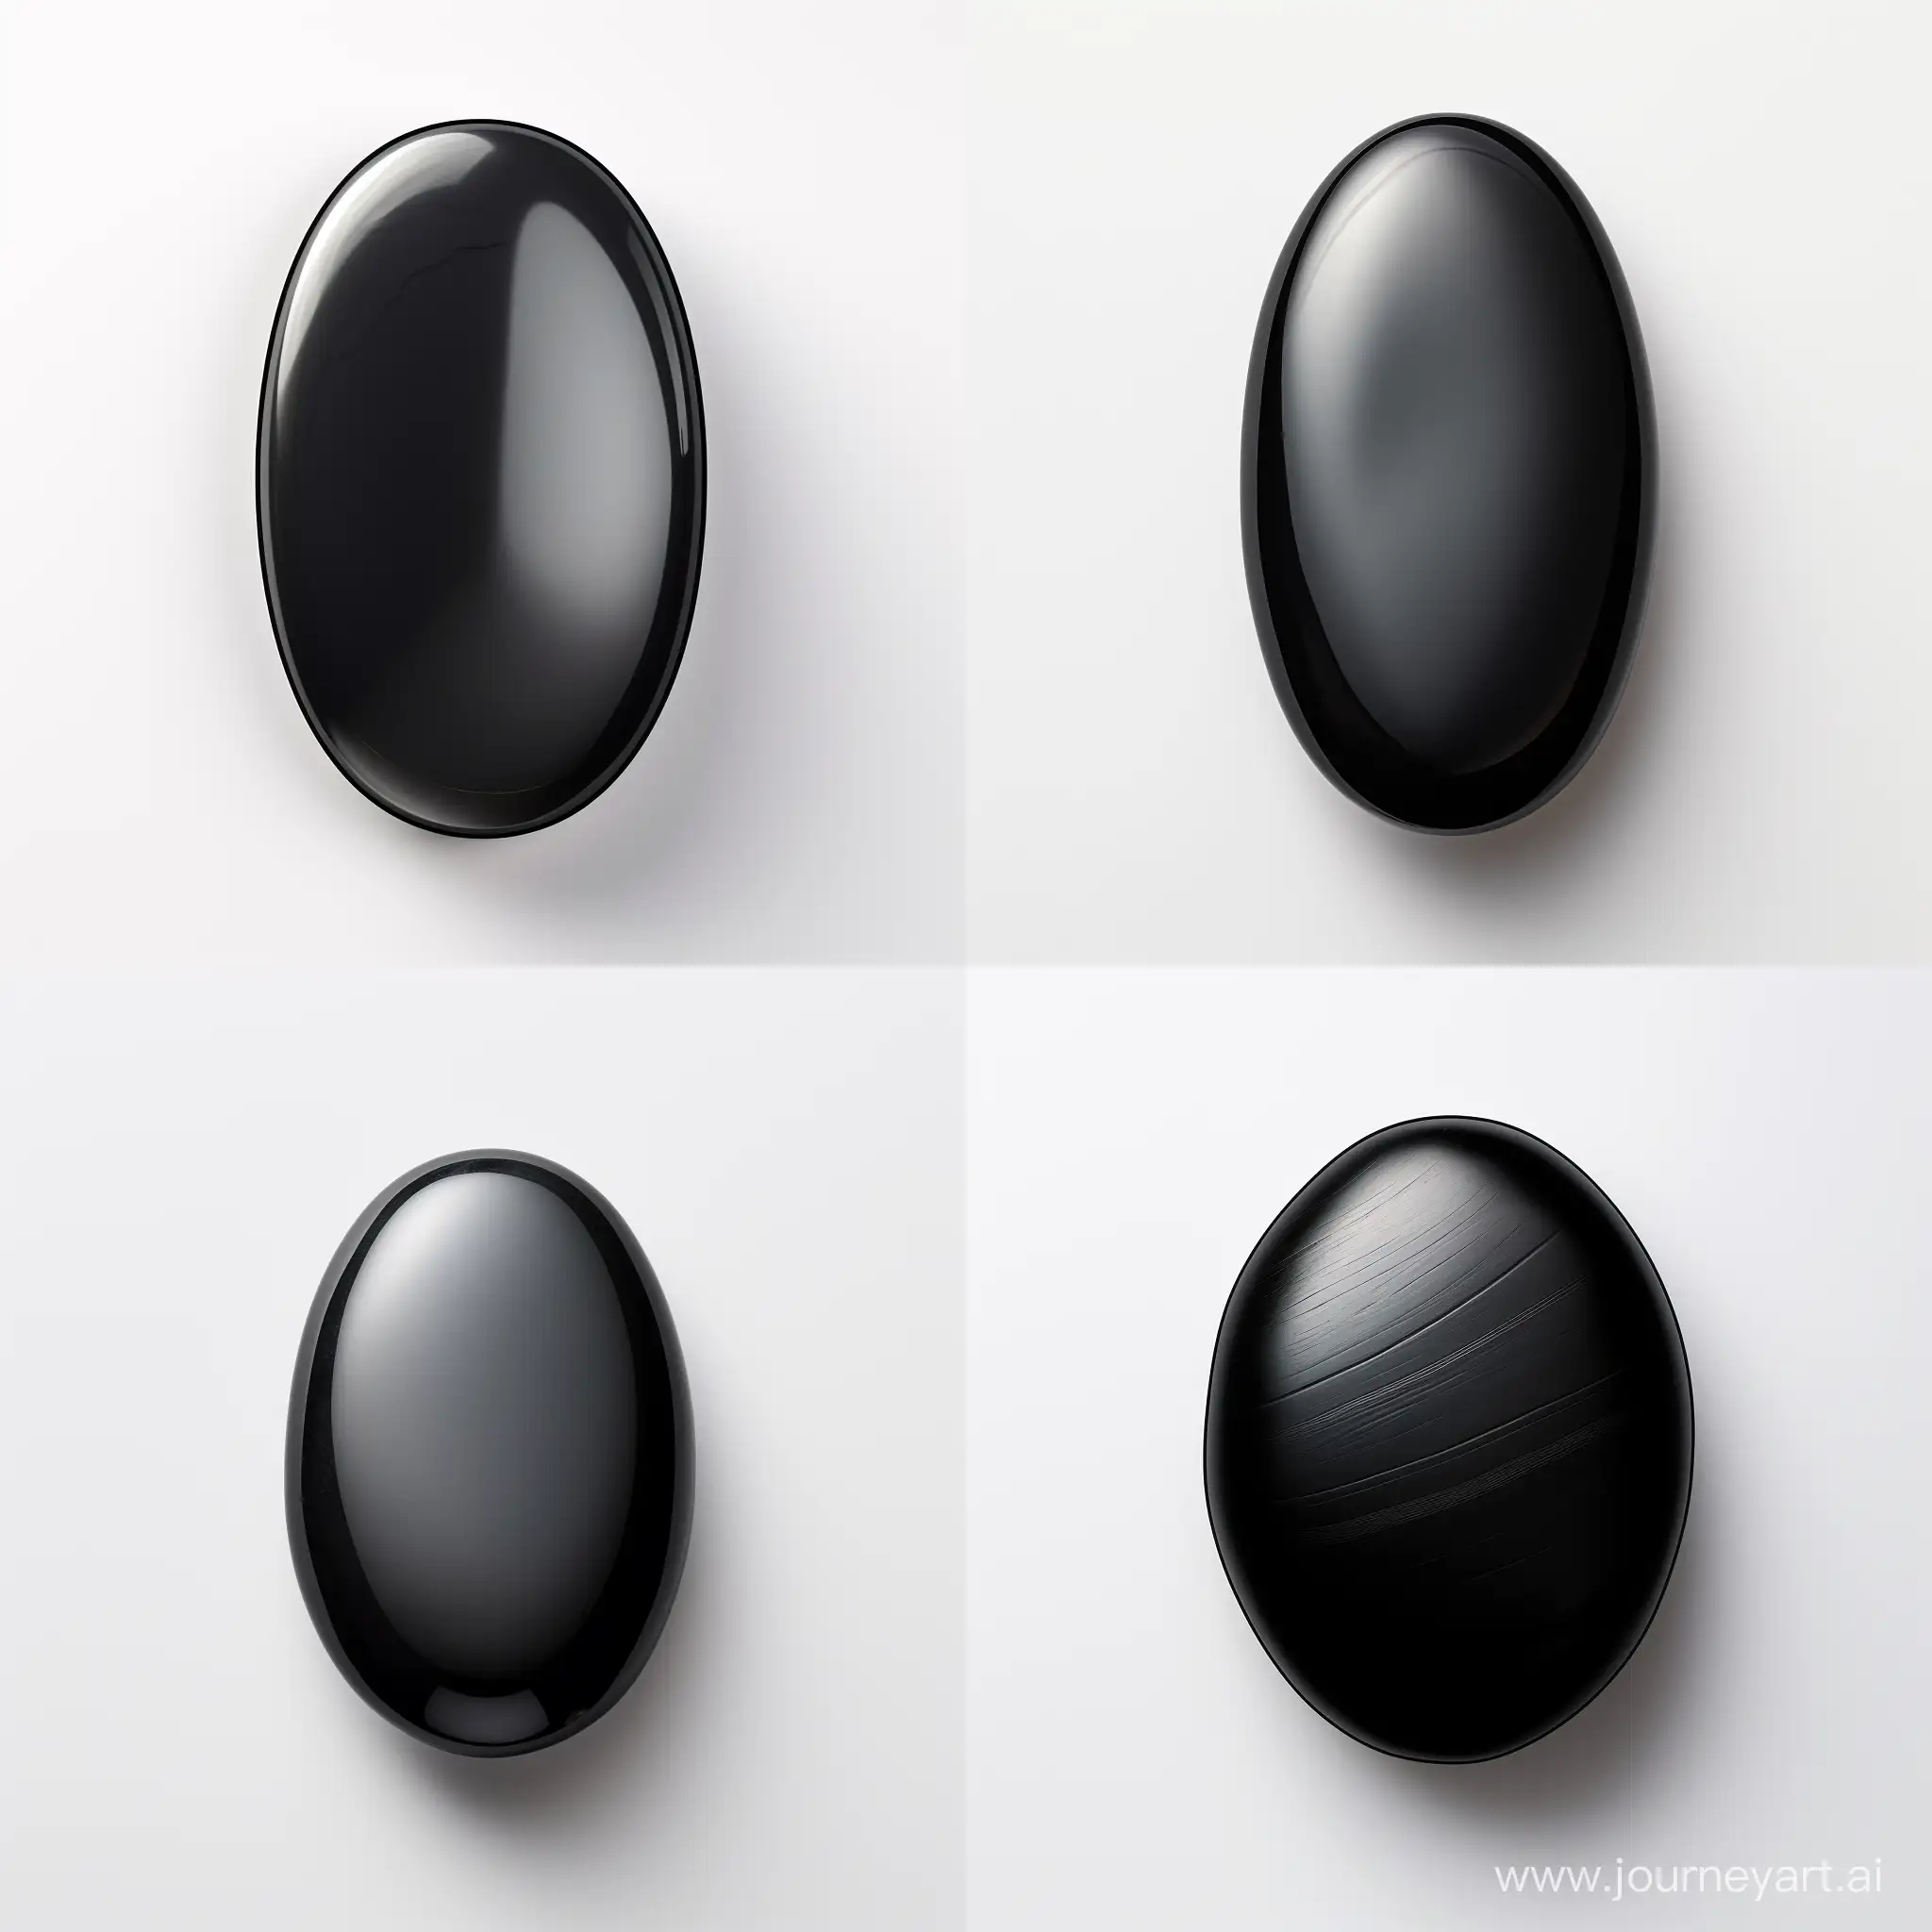 Elegant-Black-Oval-Stone-Cabochon-on-White-Background